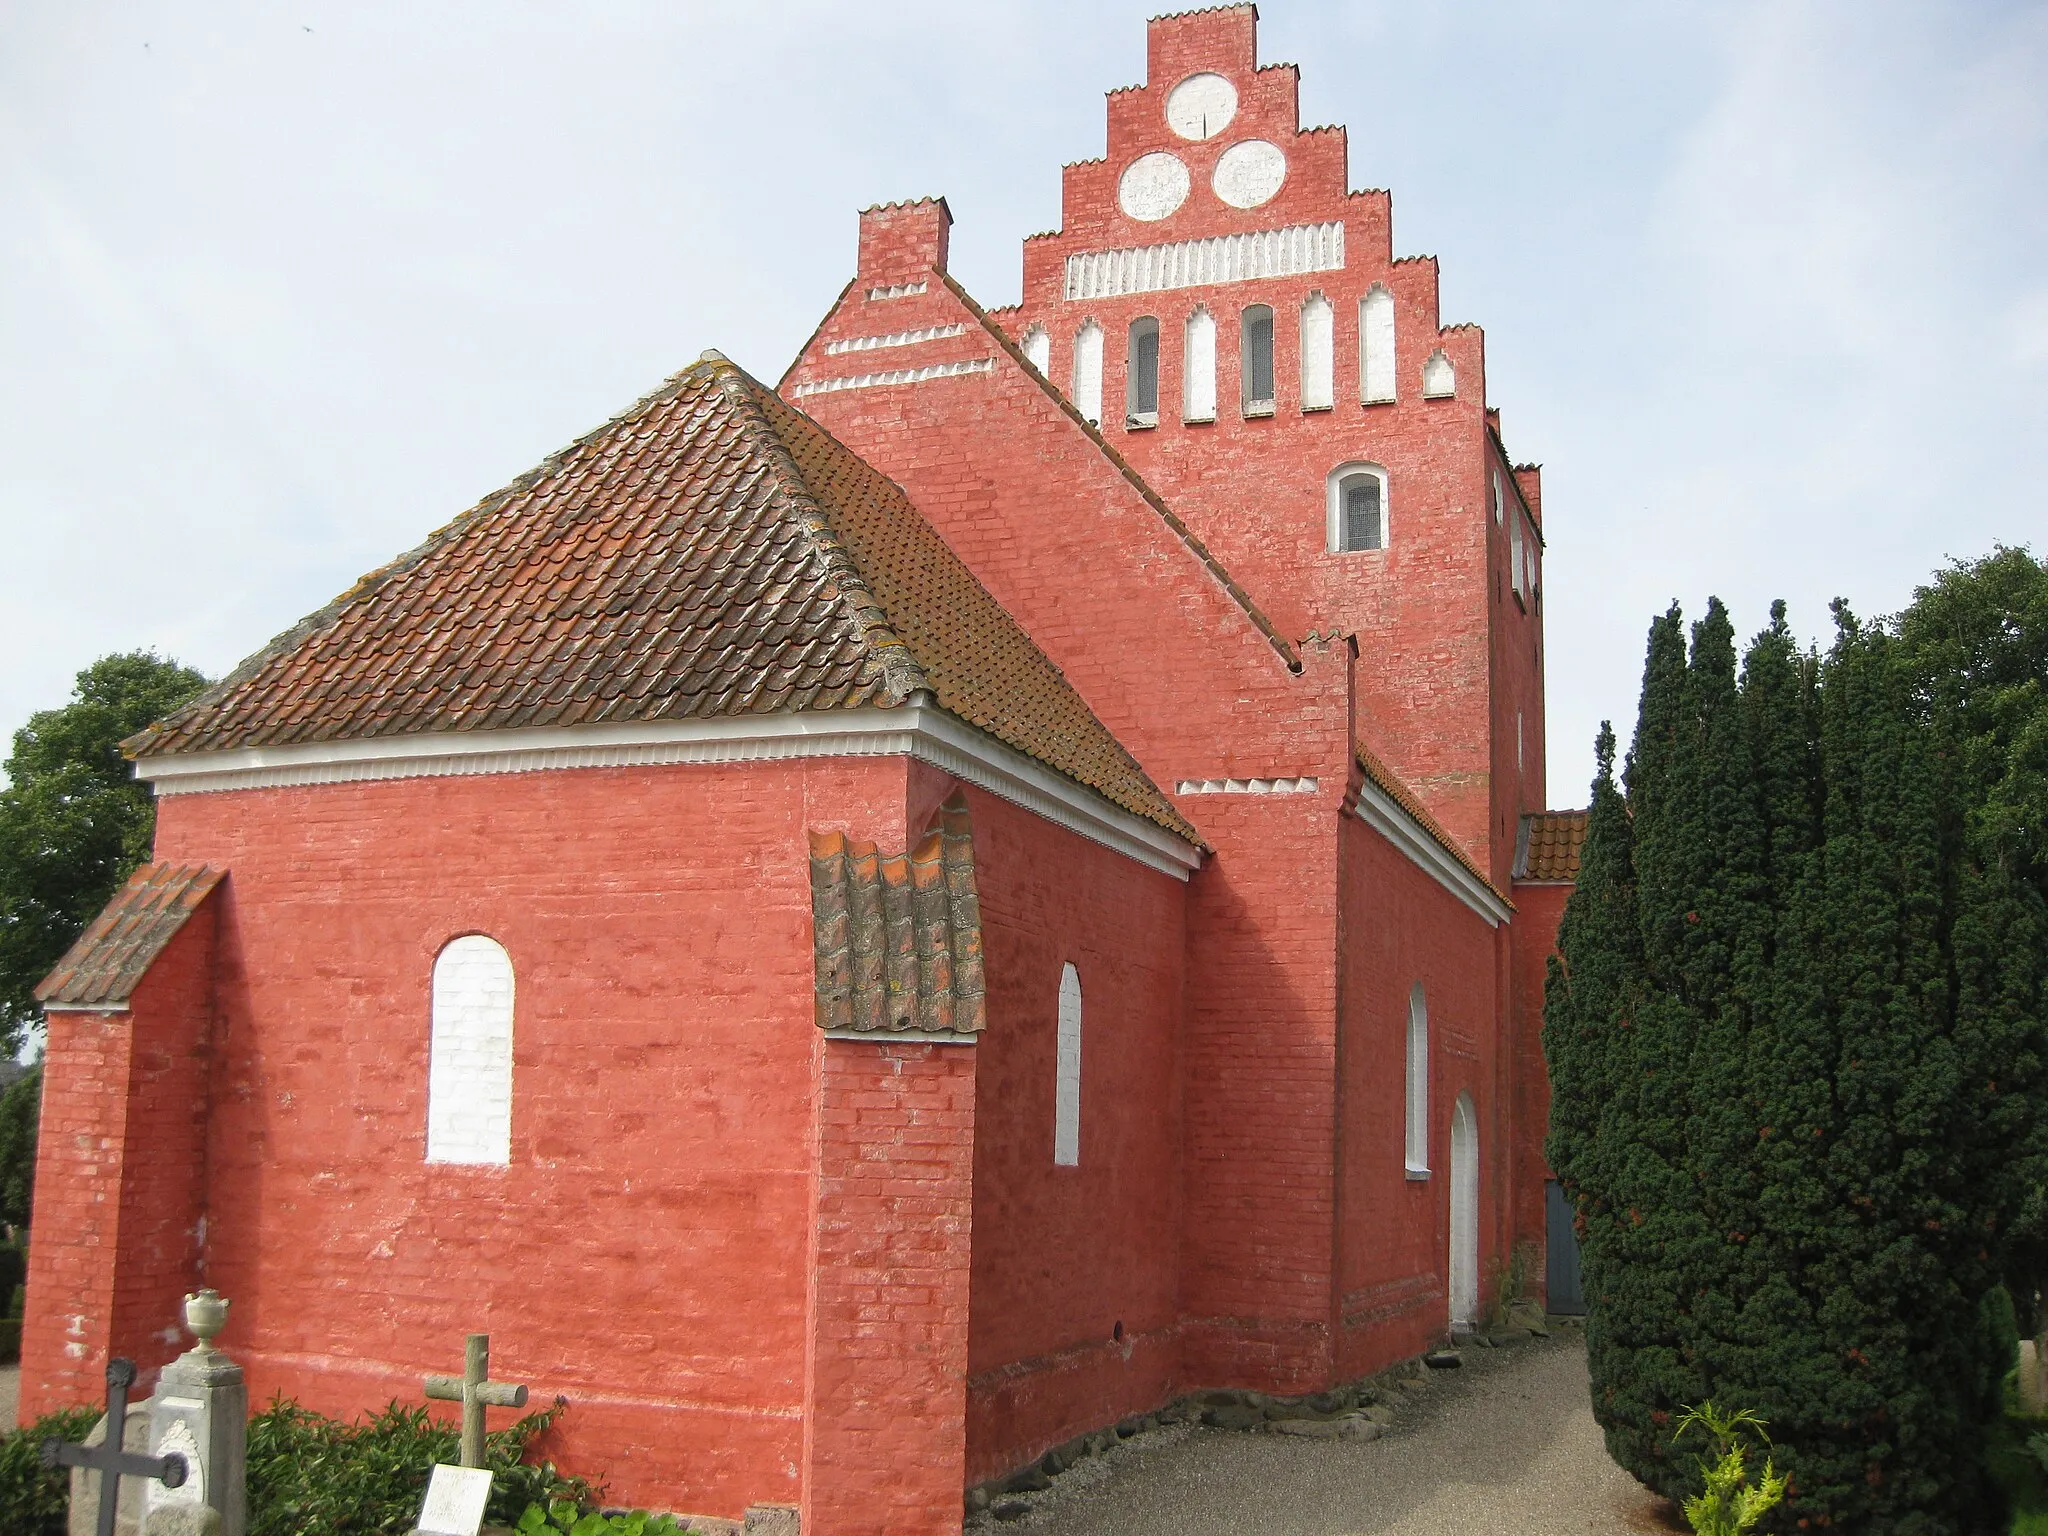 Photo showing: The church "Falkerslev Kirke" in the village "Falkerslev". The village is located on the island Falster in east Denmark.